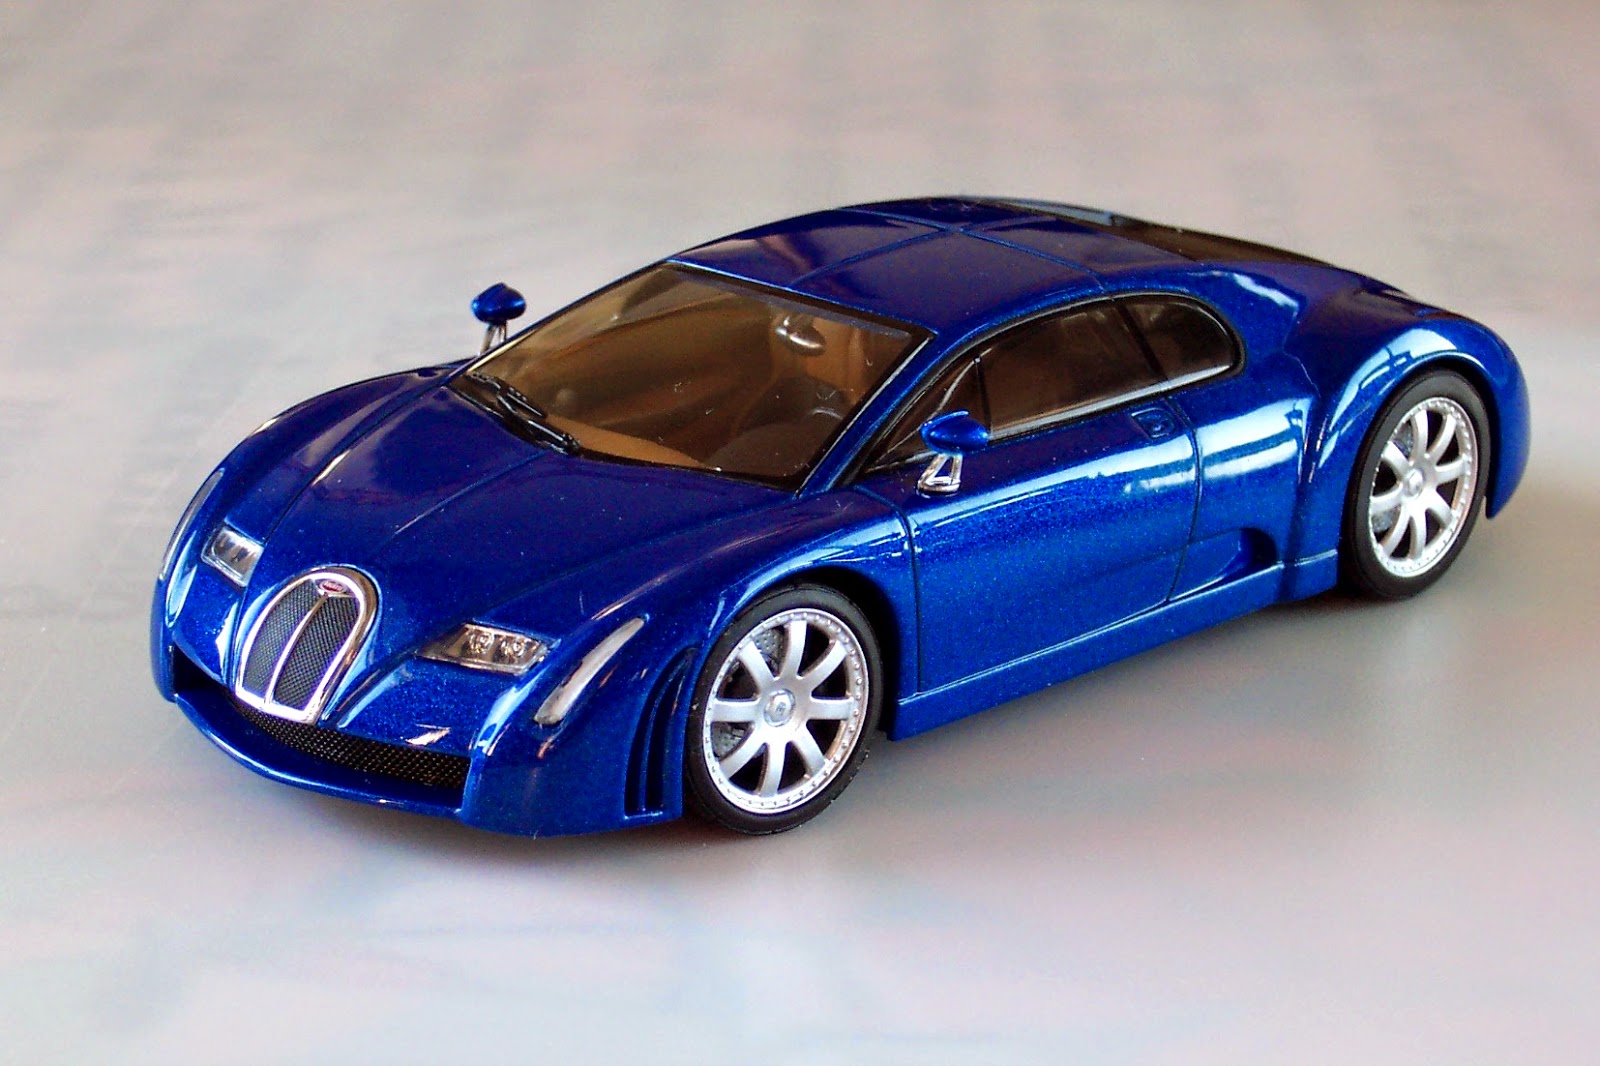 Bugatti 18. AUTOART Bugatti Veyron. Bugatti Veyron AUTOART 1/43. Bugatti 18/3 Chiron Concept.